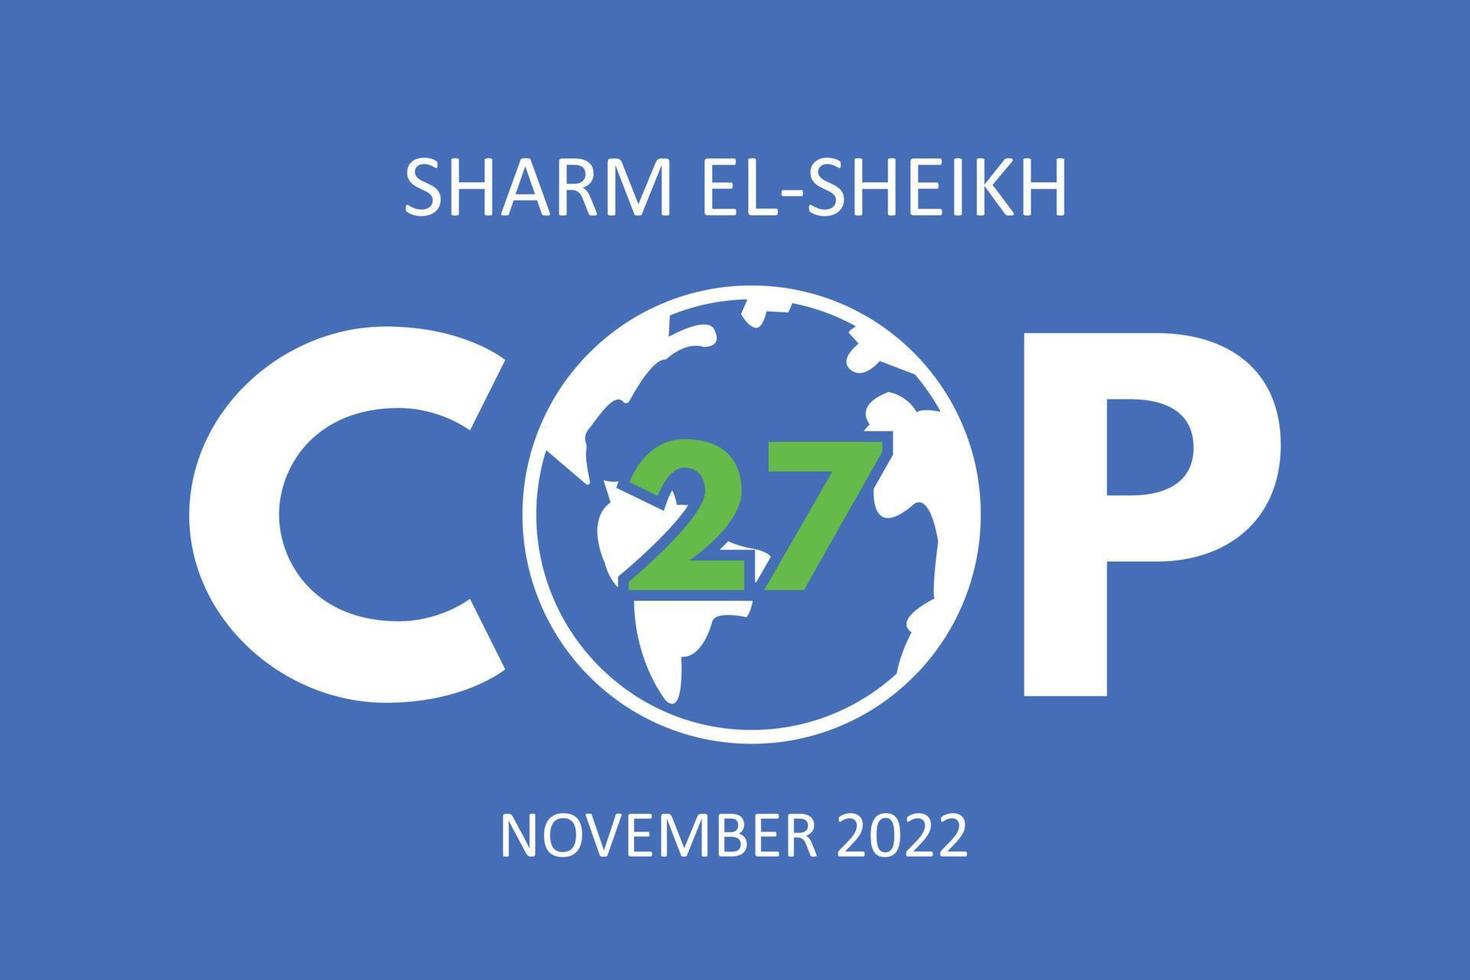 conferencia anual sobre cambio climático cop 27 sharm el-sheikh en noviembre de 2022. banner de la cumbre internacional sobre el clima. calentamiento global. ilustración vectorial vector